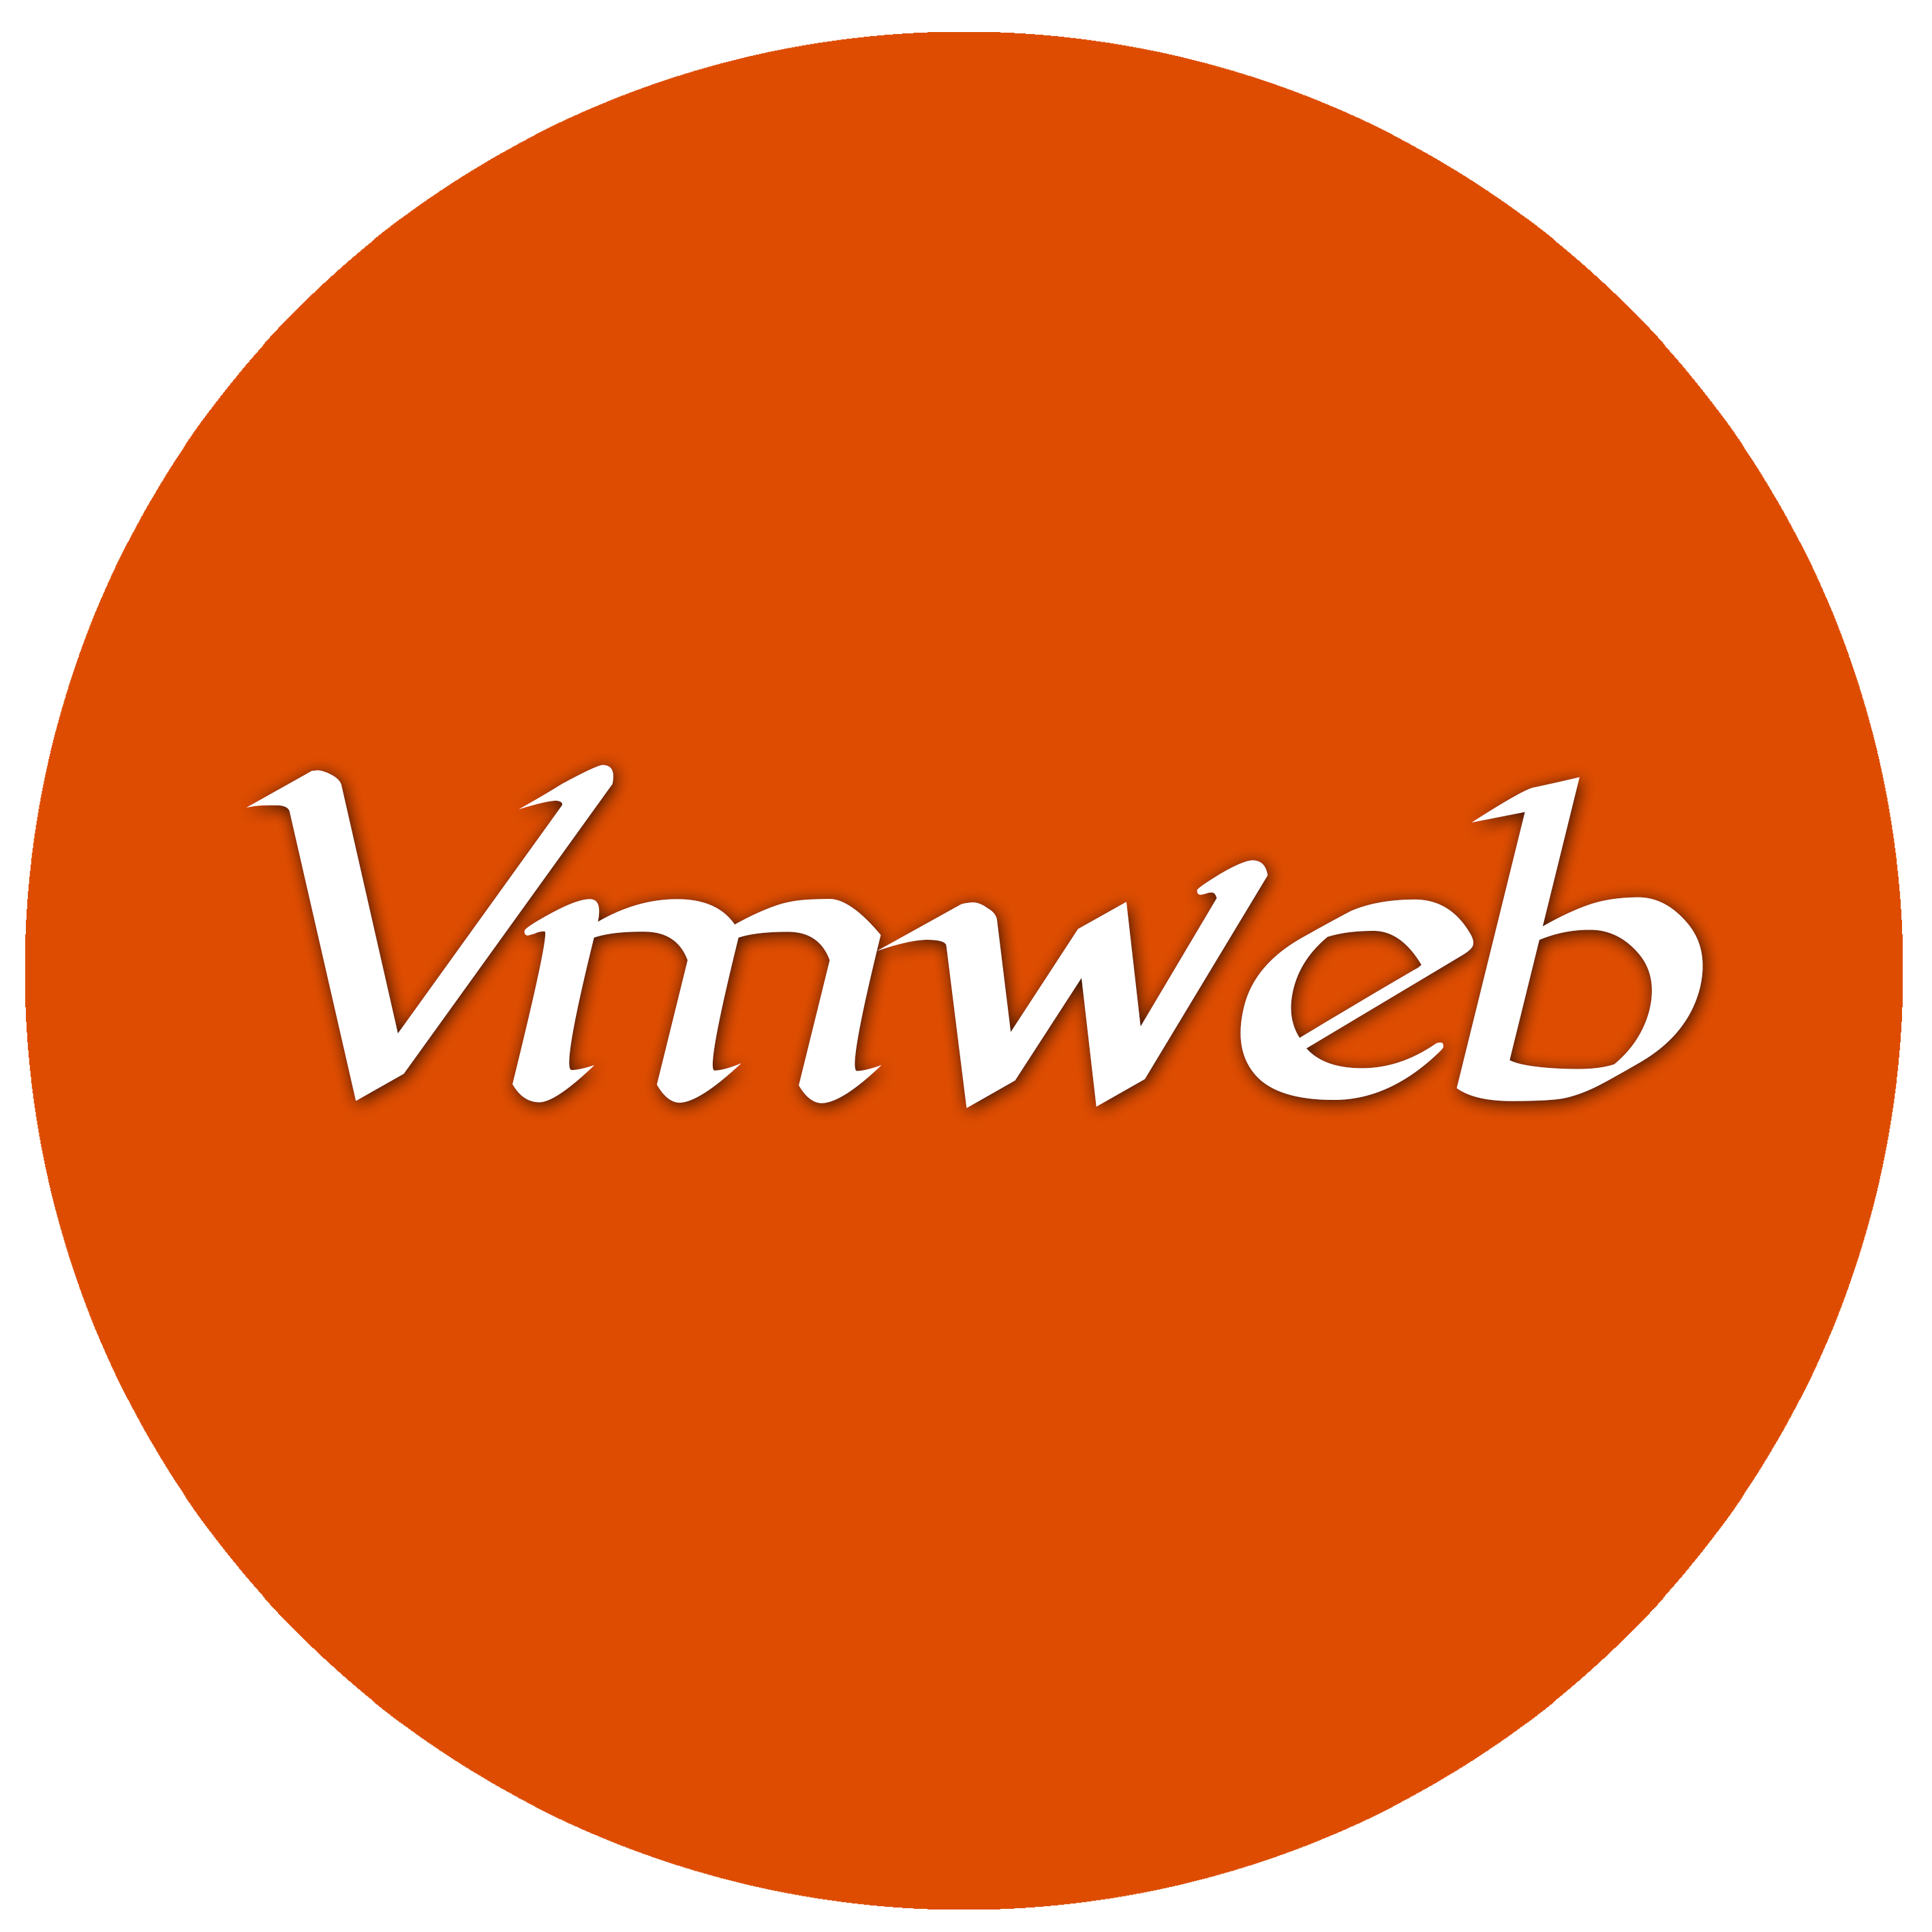 VMWEB-сайты и реклама для Компаний